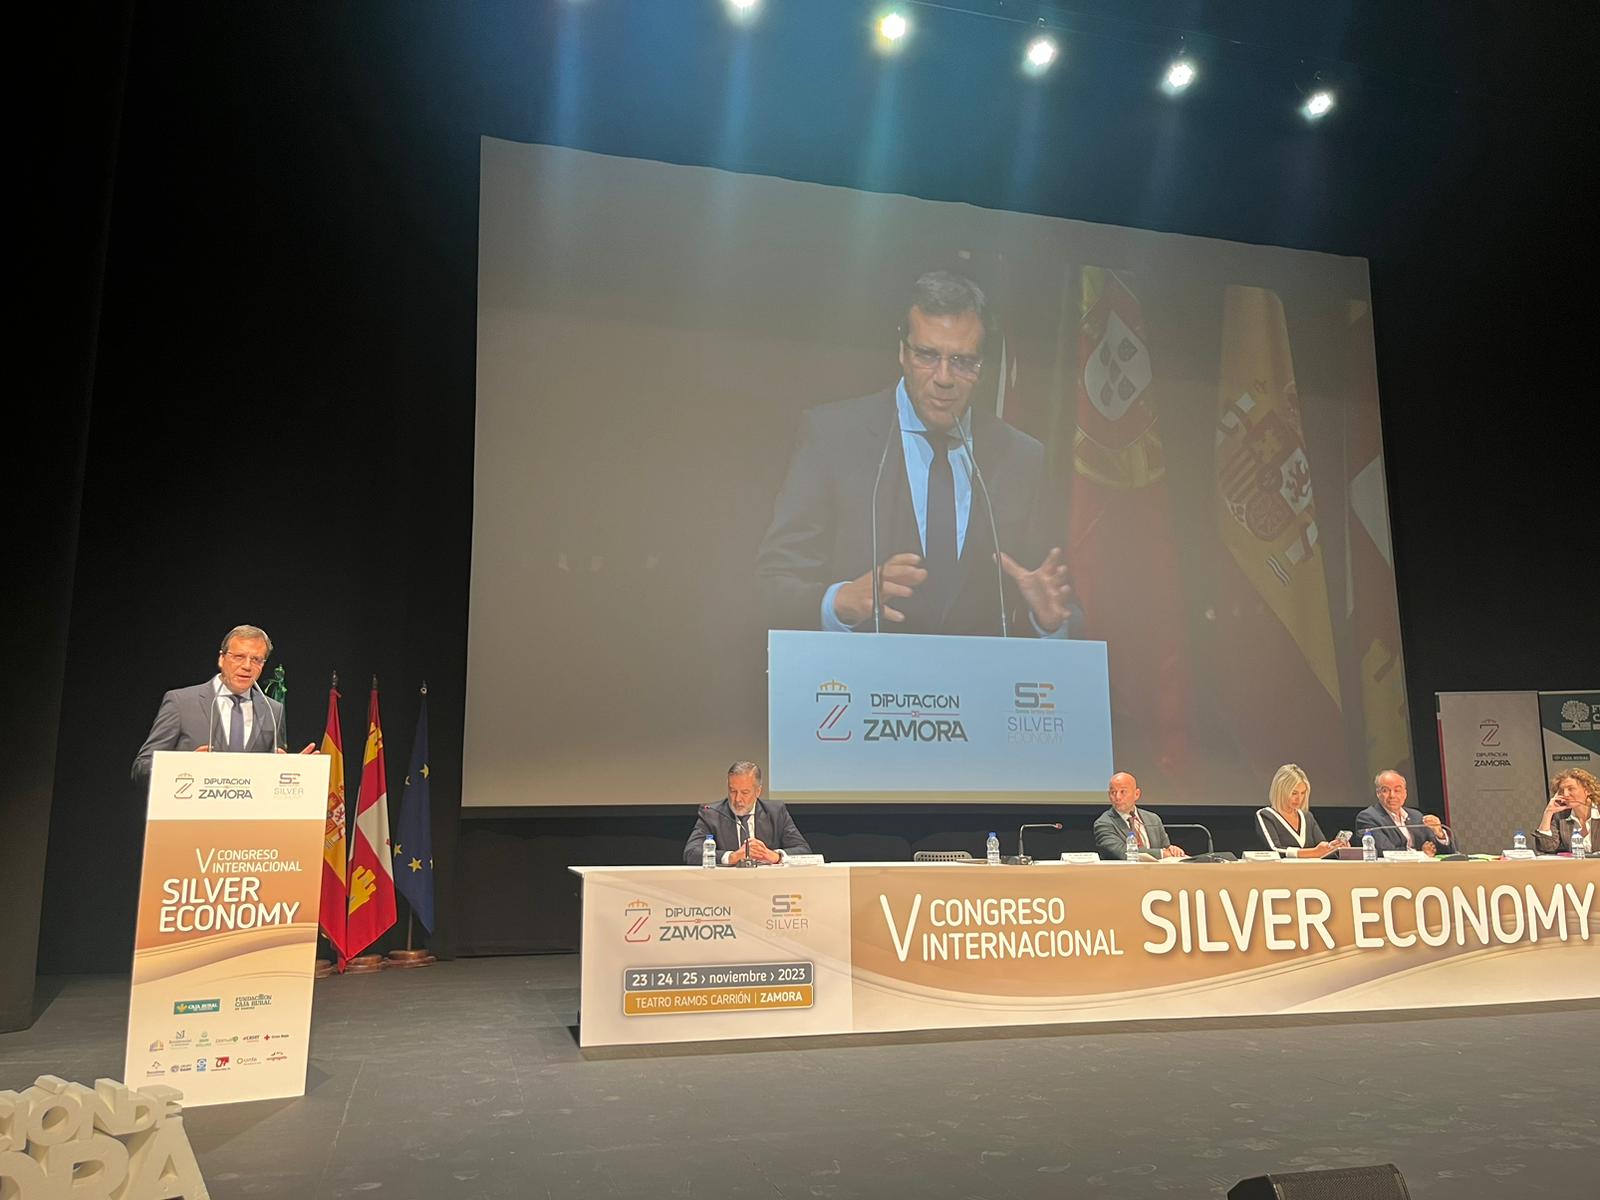 Bragança representada no V Congresso Internacional de Silver Economy